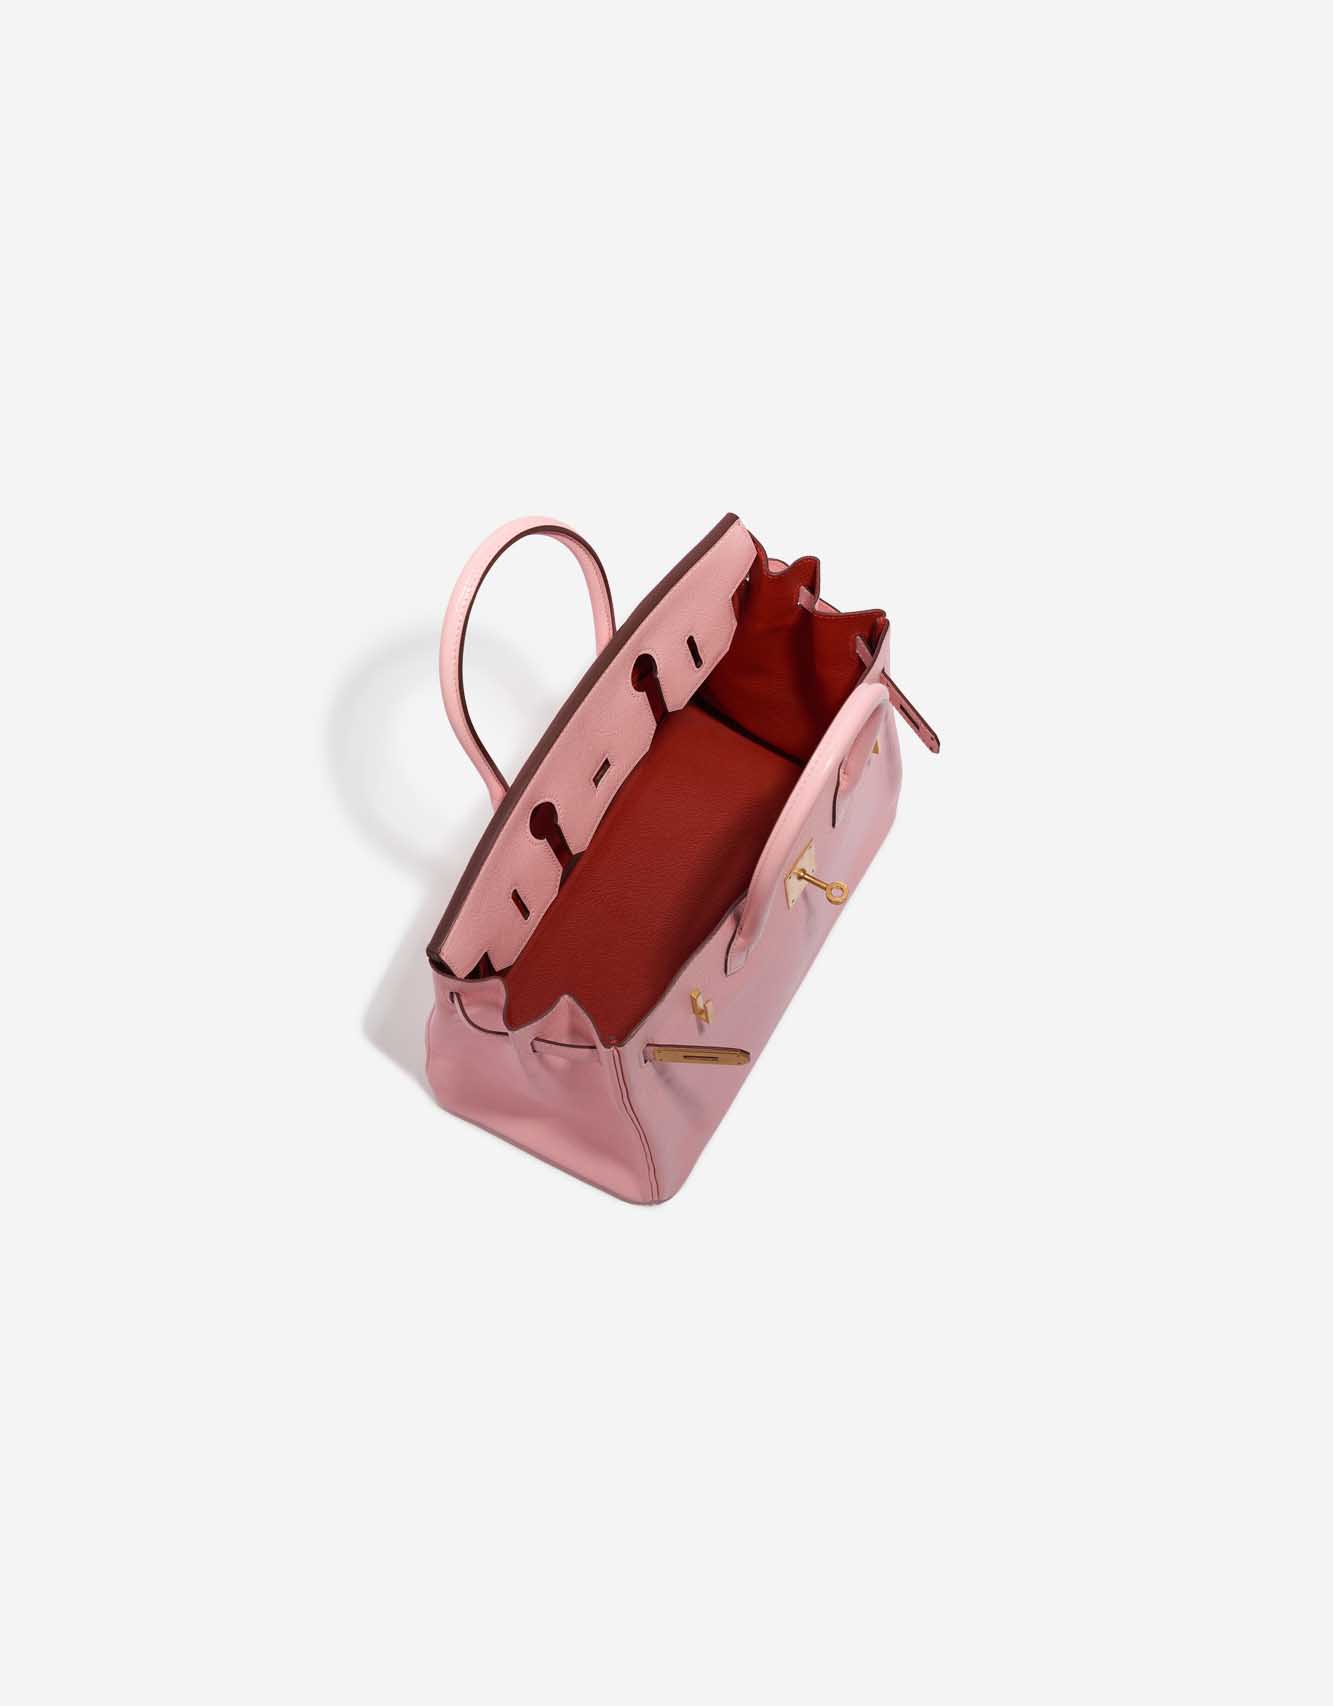 Gebrauchte Hermès Tasche Birkin 30 Custom Made Chèvre Mysore Rose Sakura / Vermillion Pink, Rose Inside | Verkaufen Sie Ihre Designer-Tasche auf Saclab.com